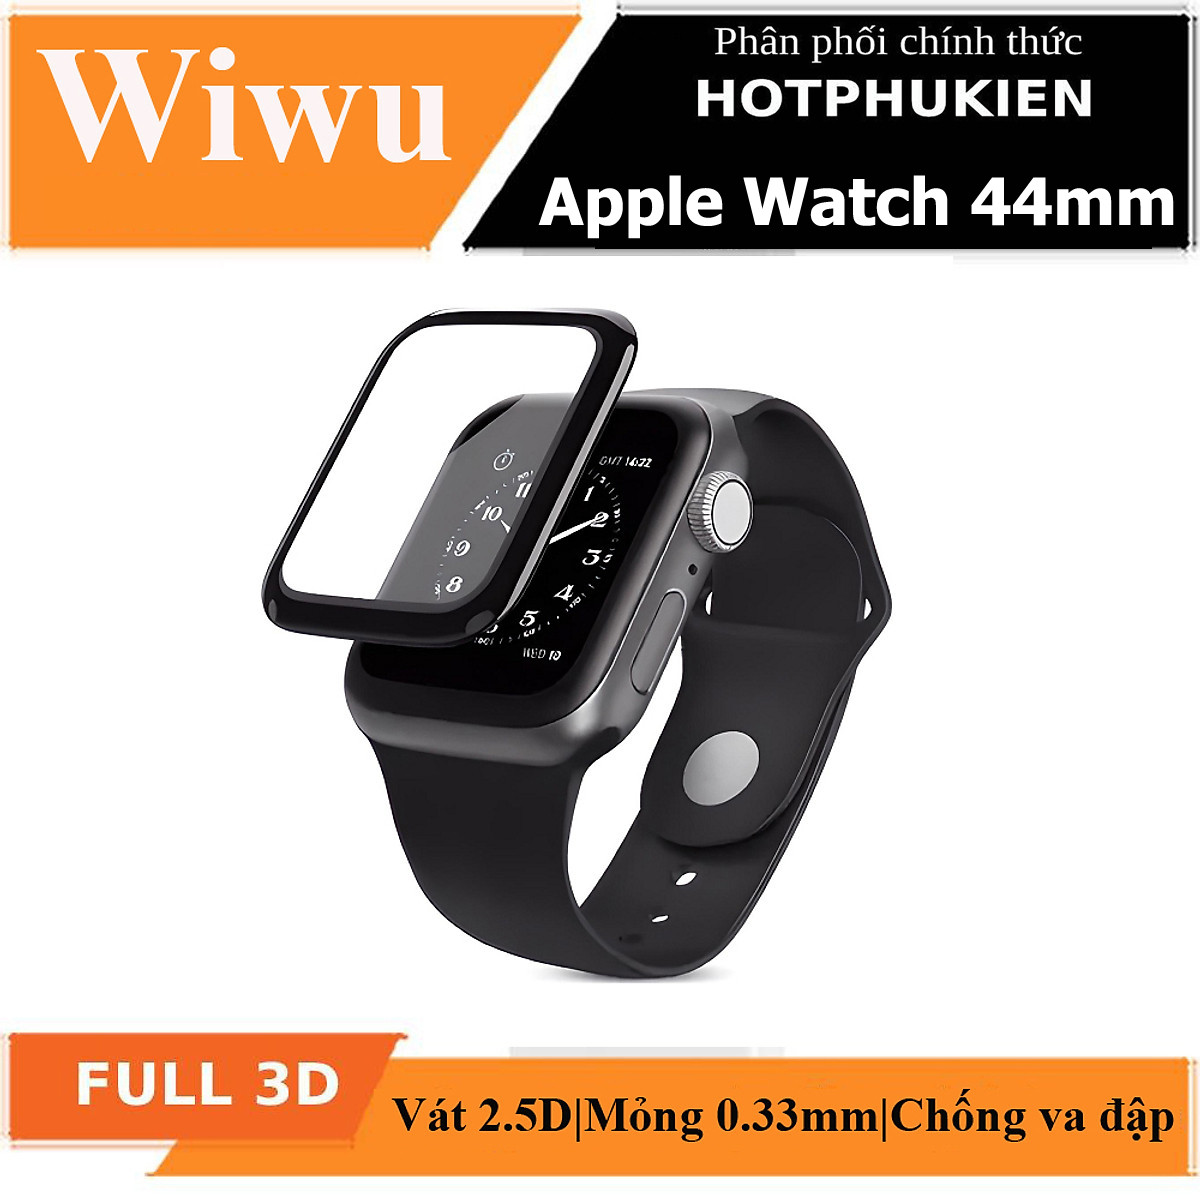 Bộ 2 miếng dán màn hình kính cường lực Full 3D cho Apple Watch 44mm hiệu WIWU iVista